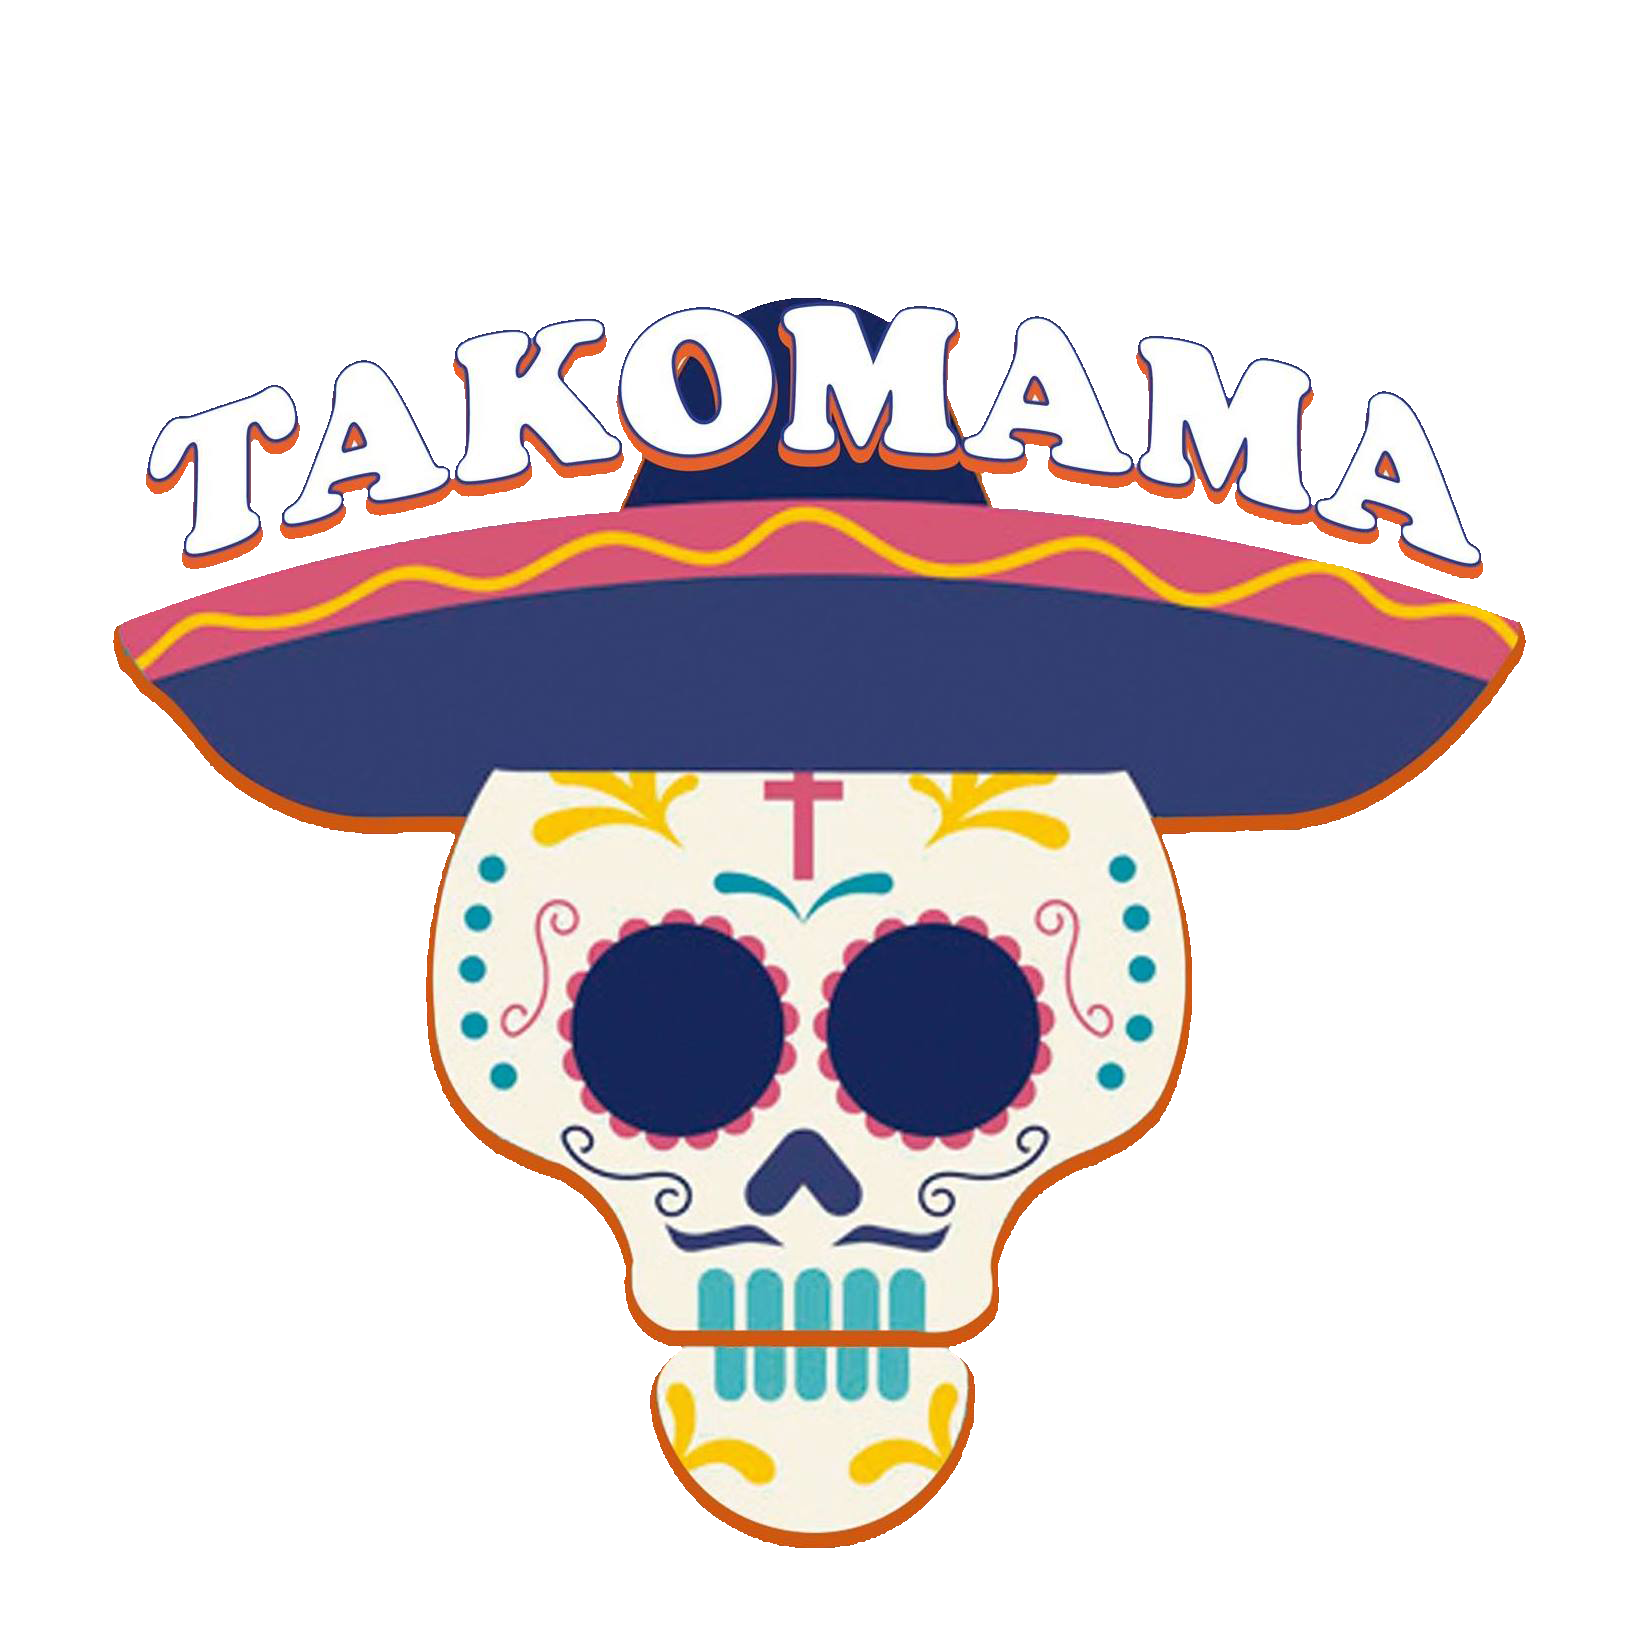 Logo Takomama